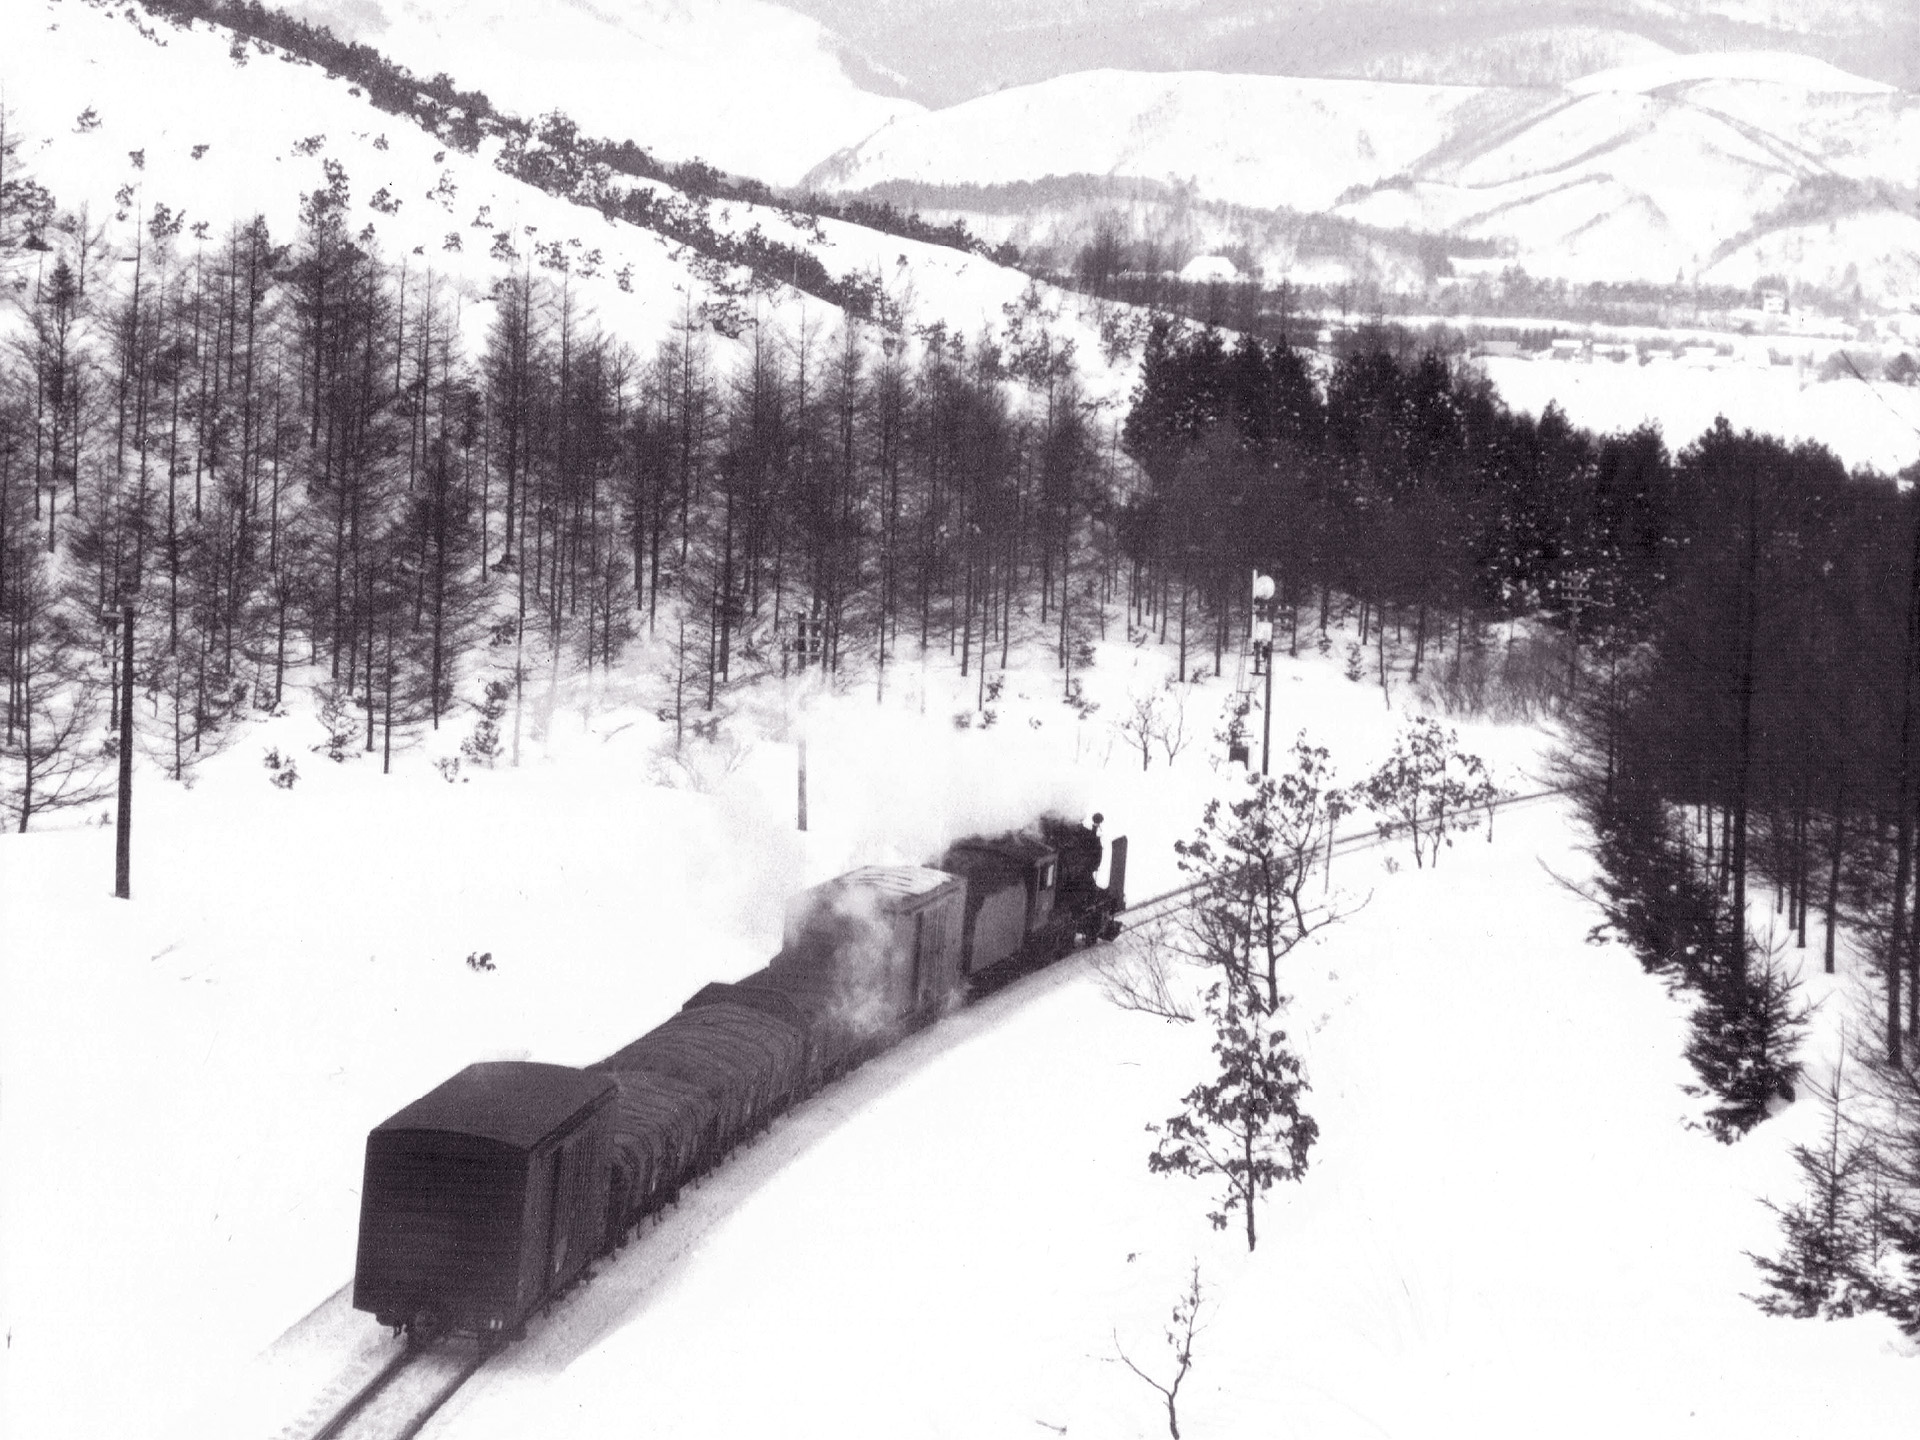 鉄道 蒸気機関車 雪原を行く セピア色の風景 壁紙19x1440 壁紙館